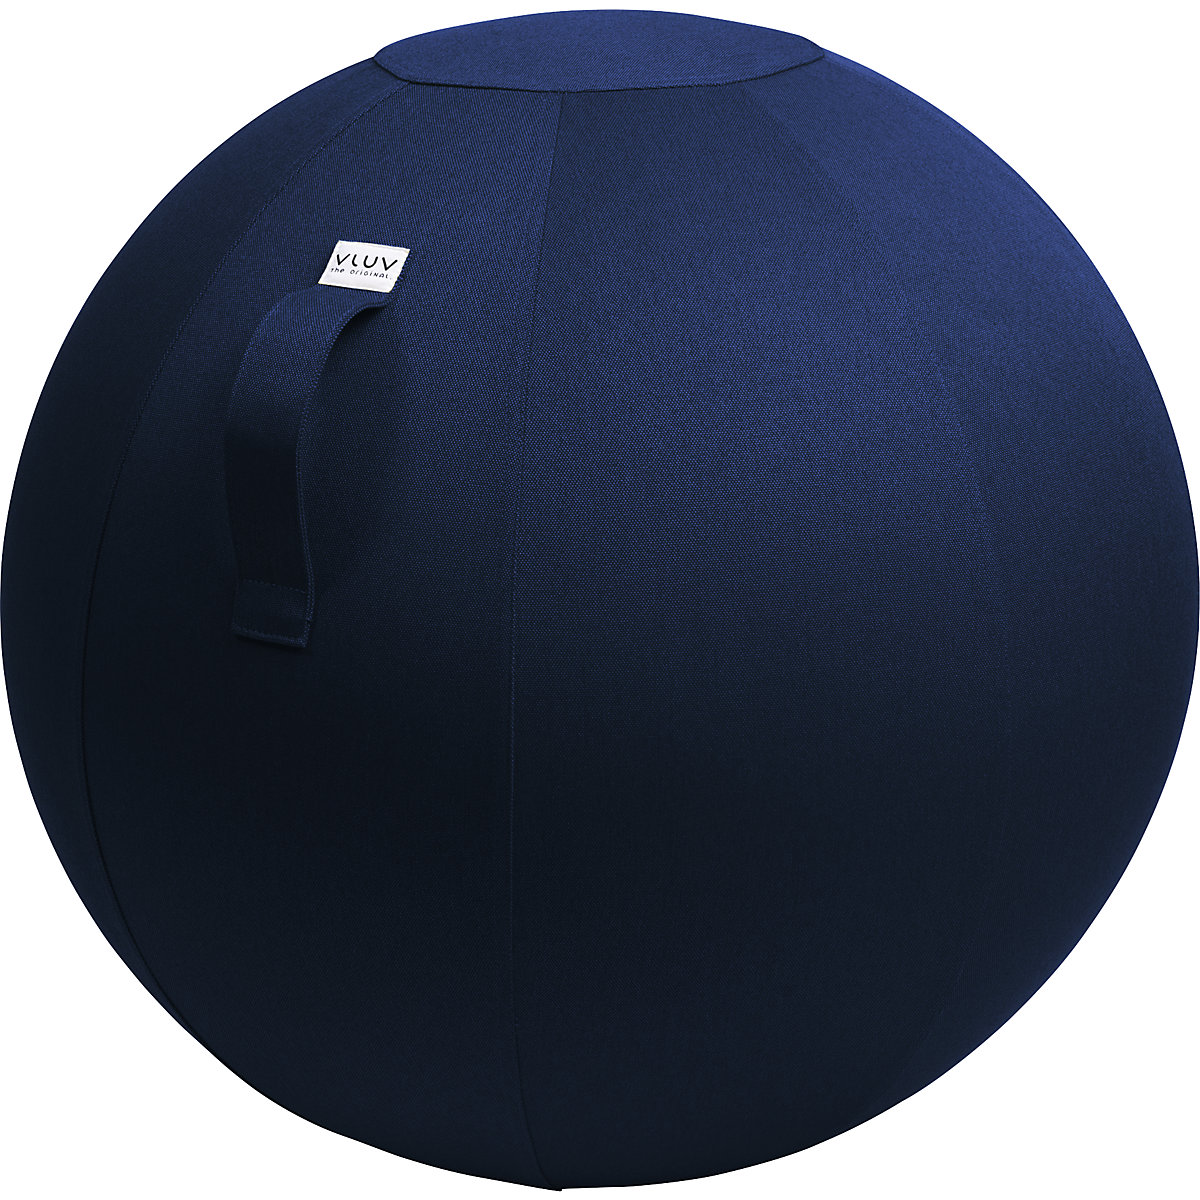 Piłka do siedzenia LEIV – VLUV, pokrowiec z tkaniny o wyglądzie płótna, 700 – 750 mm, błękit królewski-12